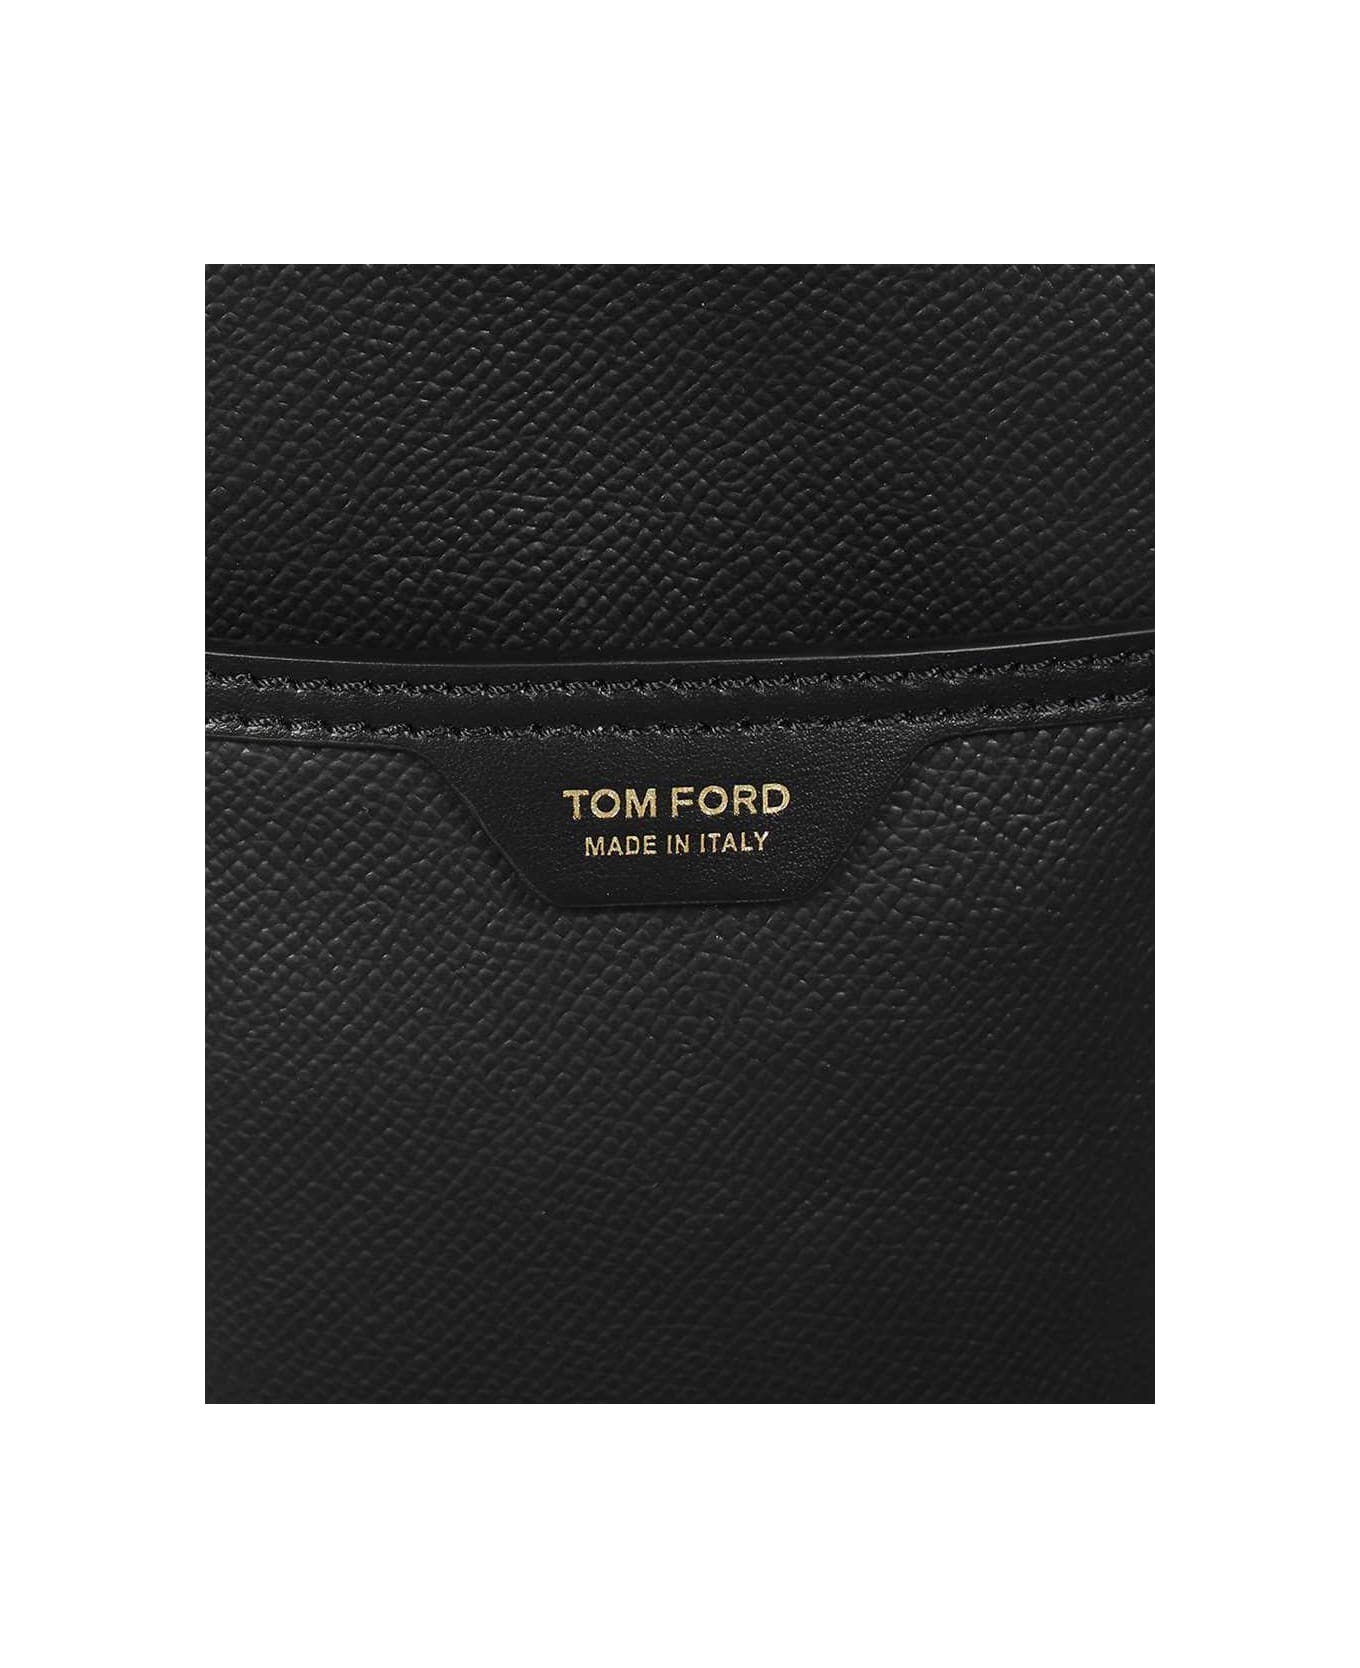 Tom Ford Leather Messenger Bag - black